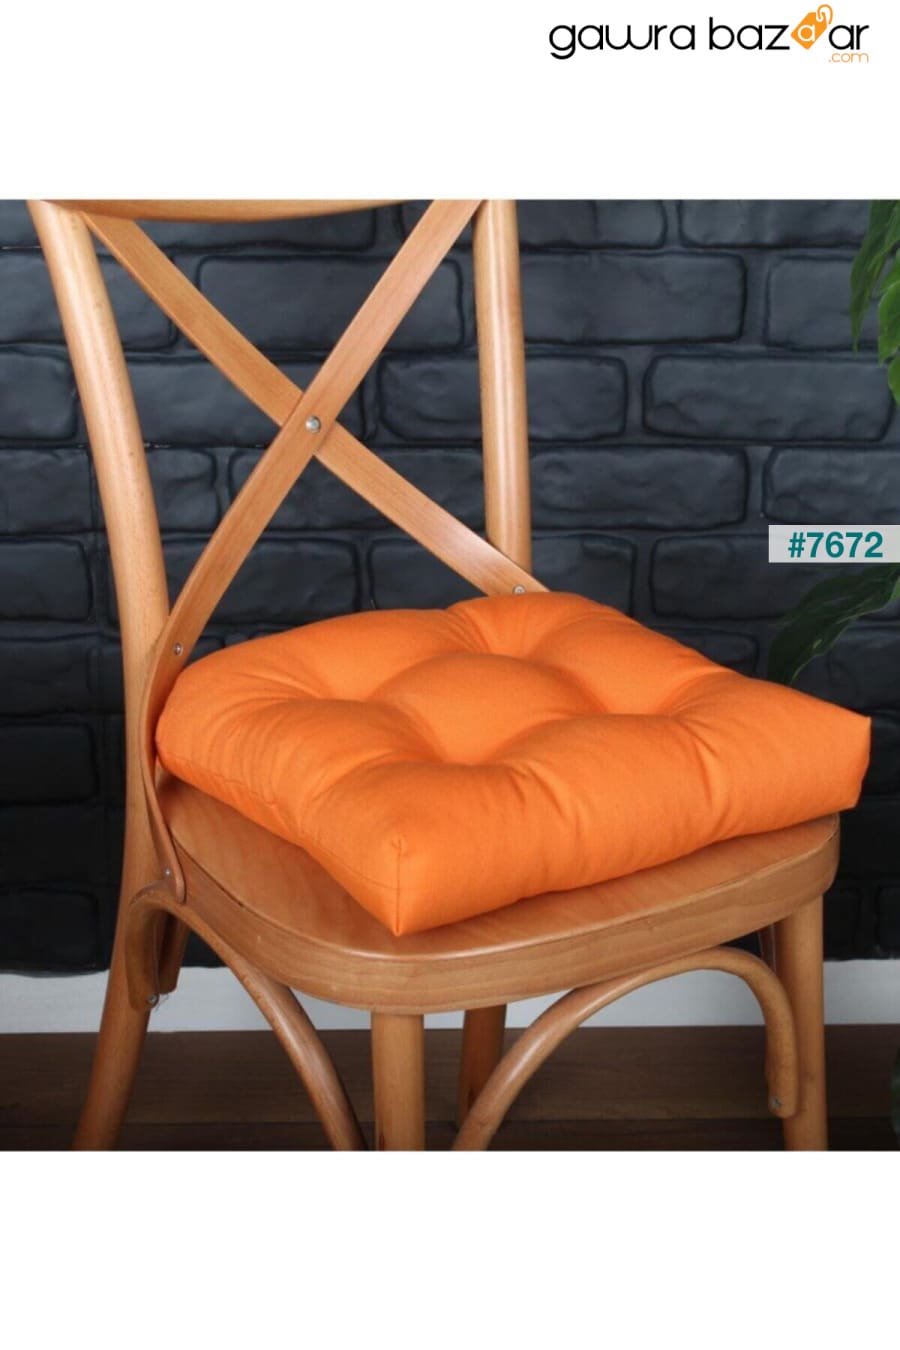 وسادة كرسي Pofidik باللون البرتقالي الذهبي مخيط خاص 40x40 سم ALTINPAMUK 1